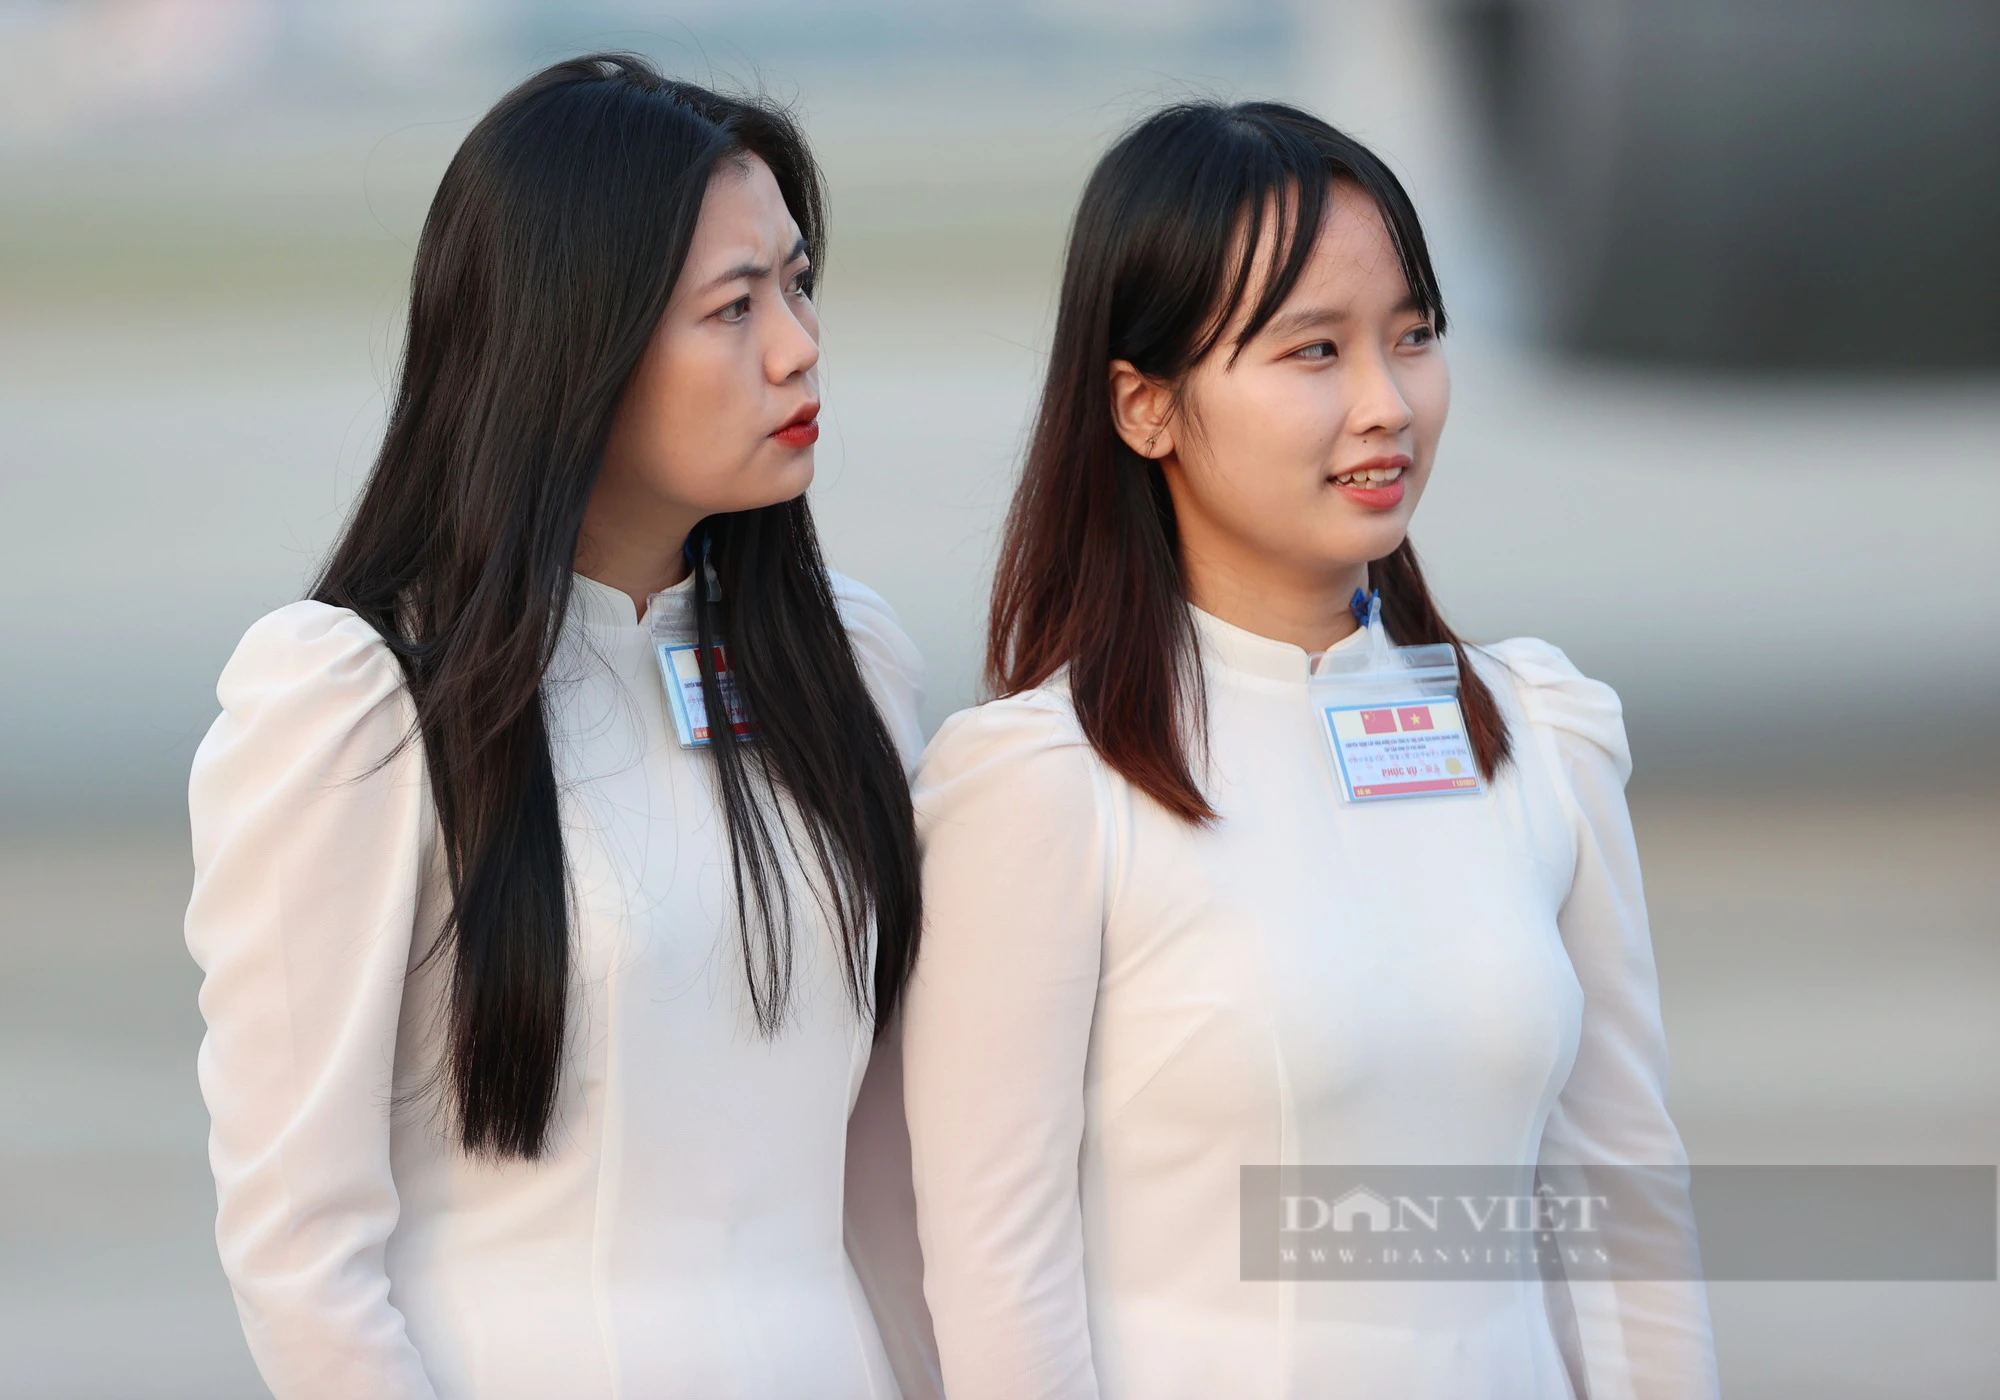 Nhan sắc 2 nữ sinh tặng hoa Tổng bí thư, Chủ tịch nước Trung Quốc Tập Cận Bình và Phu nhân tại Nội Bài - Ảnh 5.